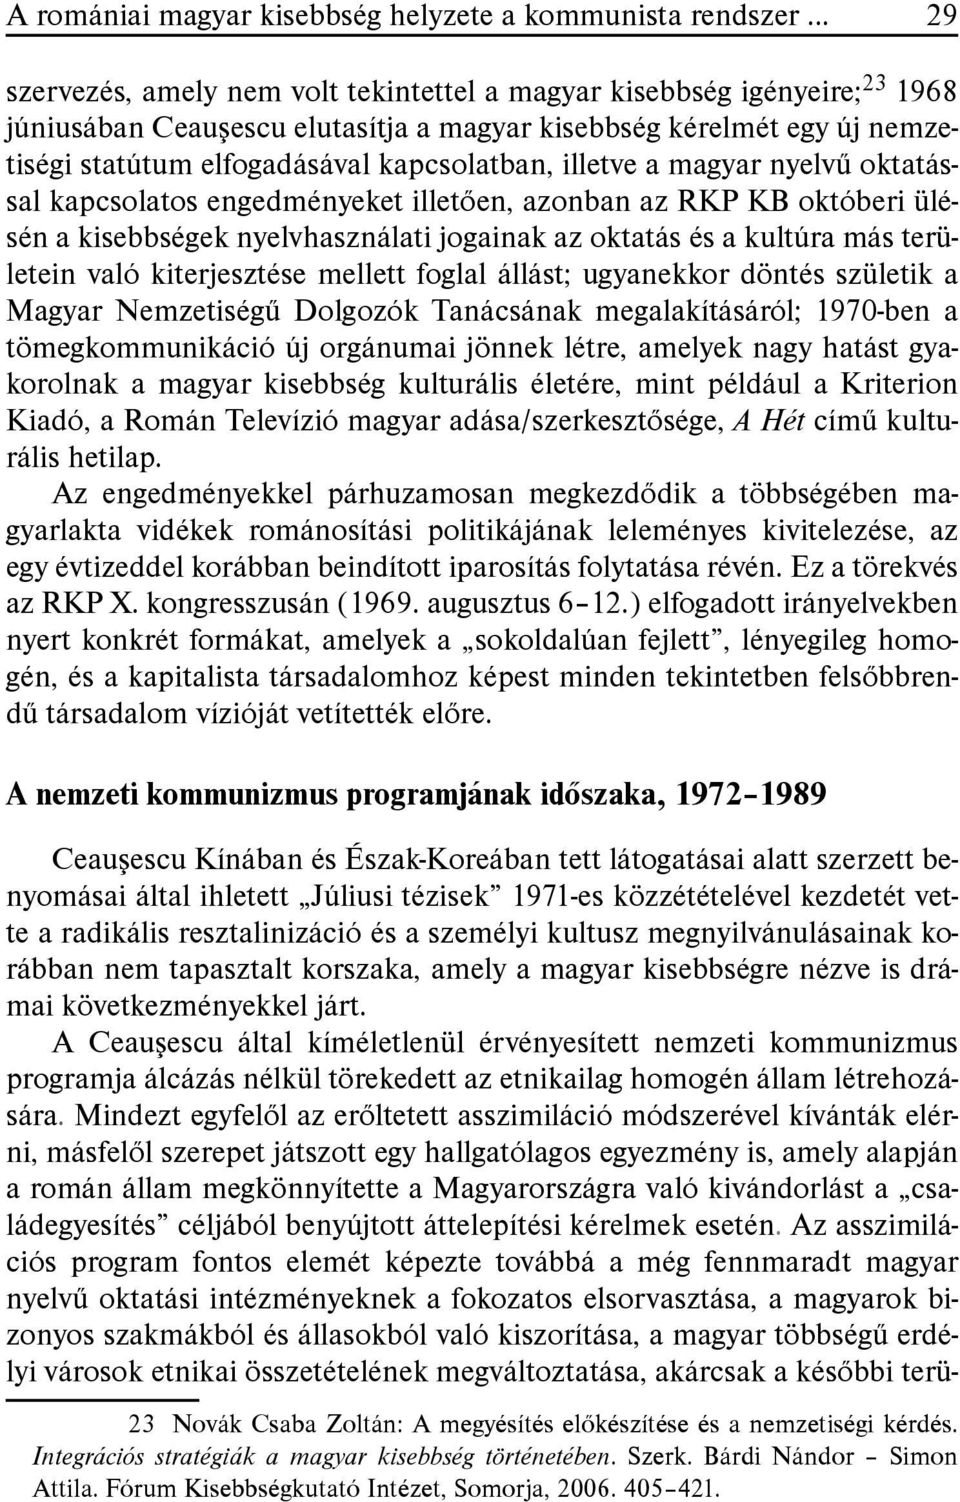 illetve a magyar nyelvű oktatással kapcsolatos engedményeket illetően, azonban az RKP KB októberi ülésén a kisebbségek nyelvhasználati jogainak az oktatás és a kultúra más területein való